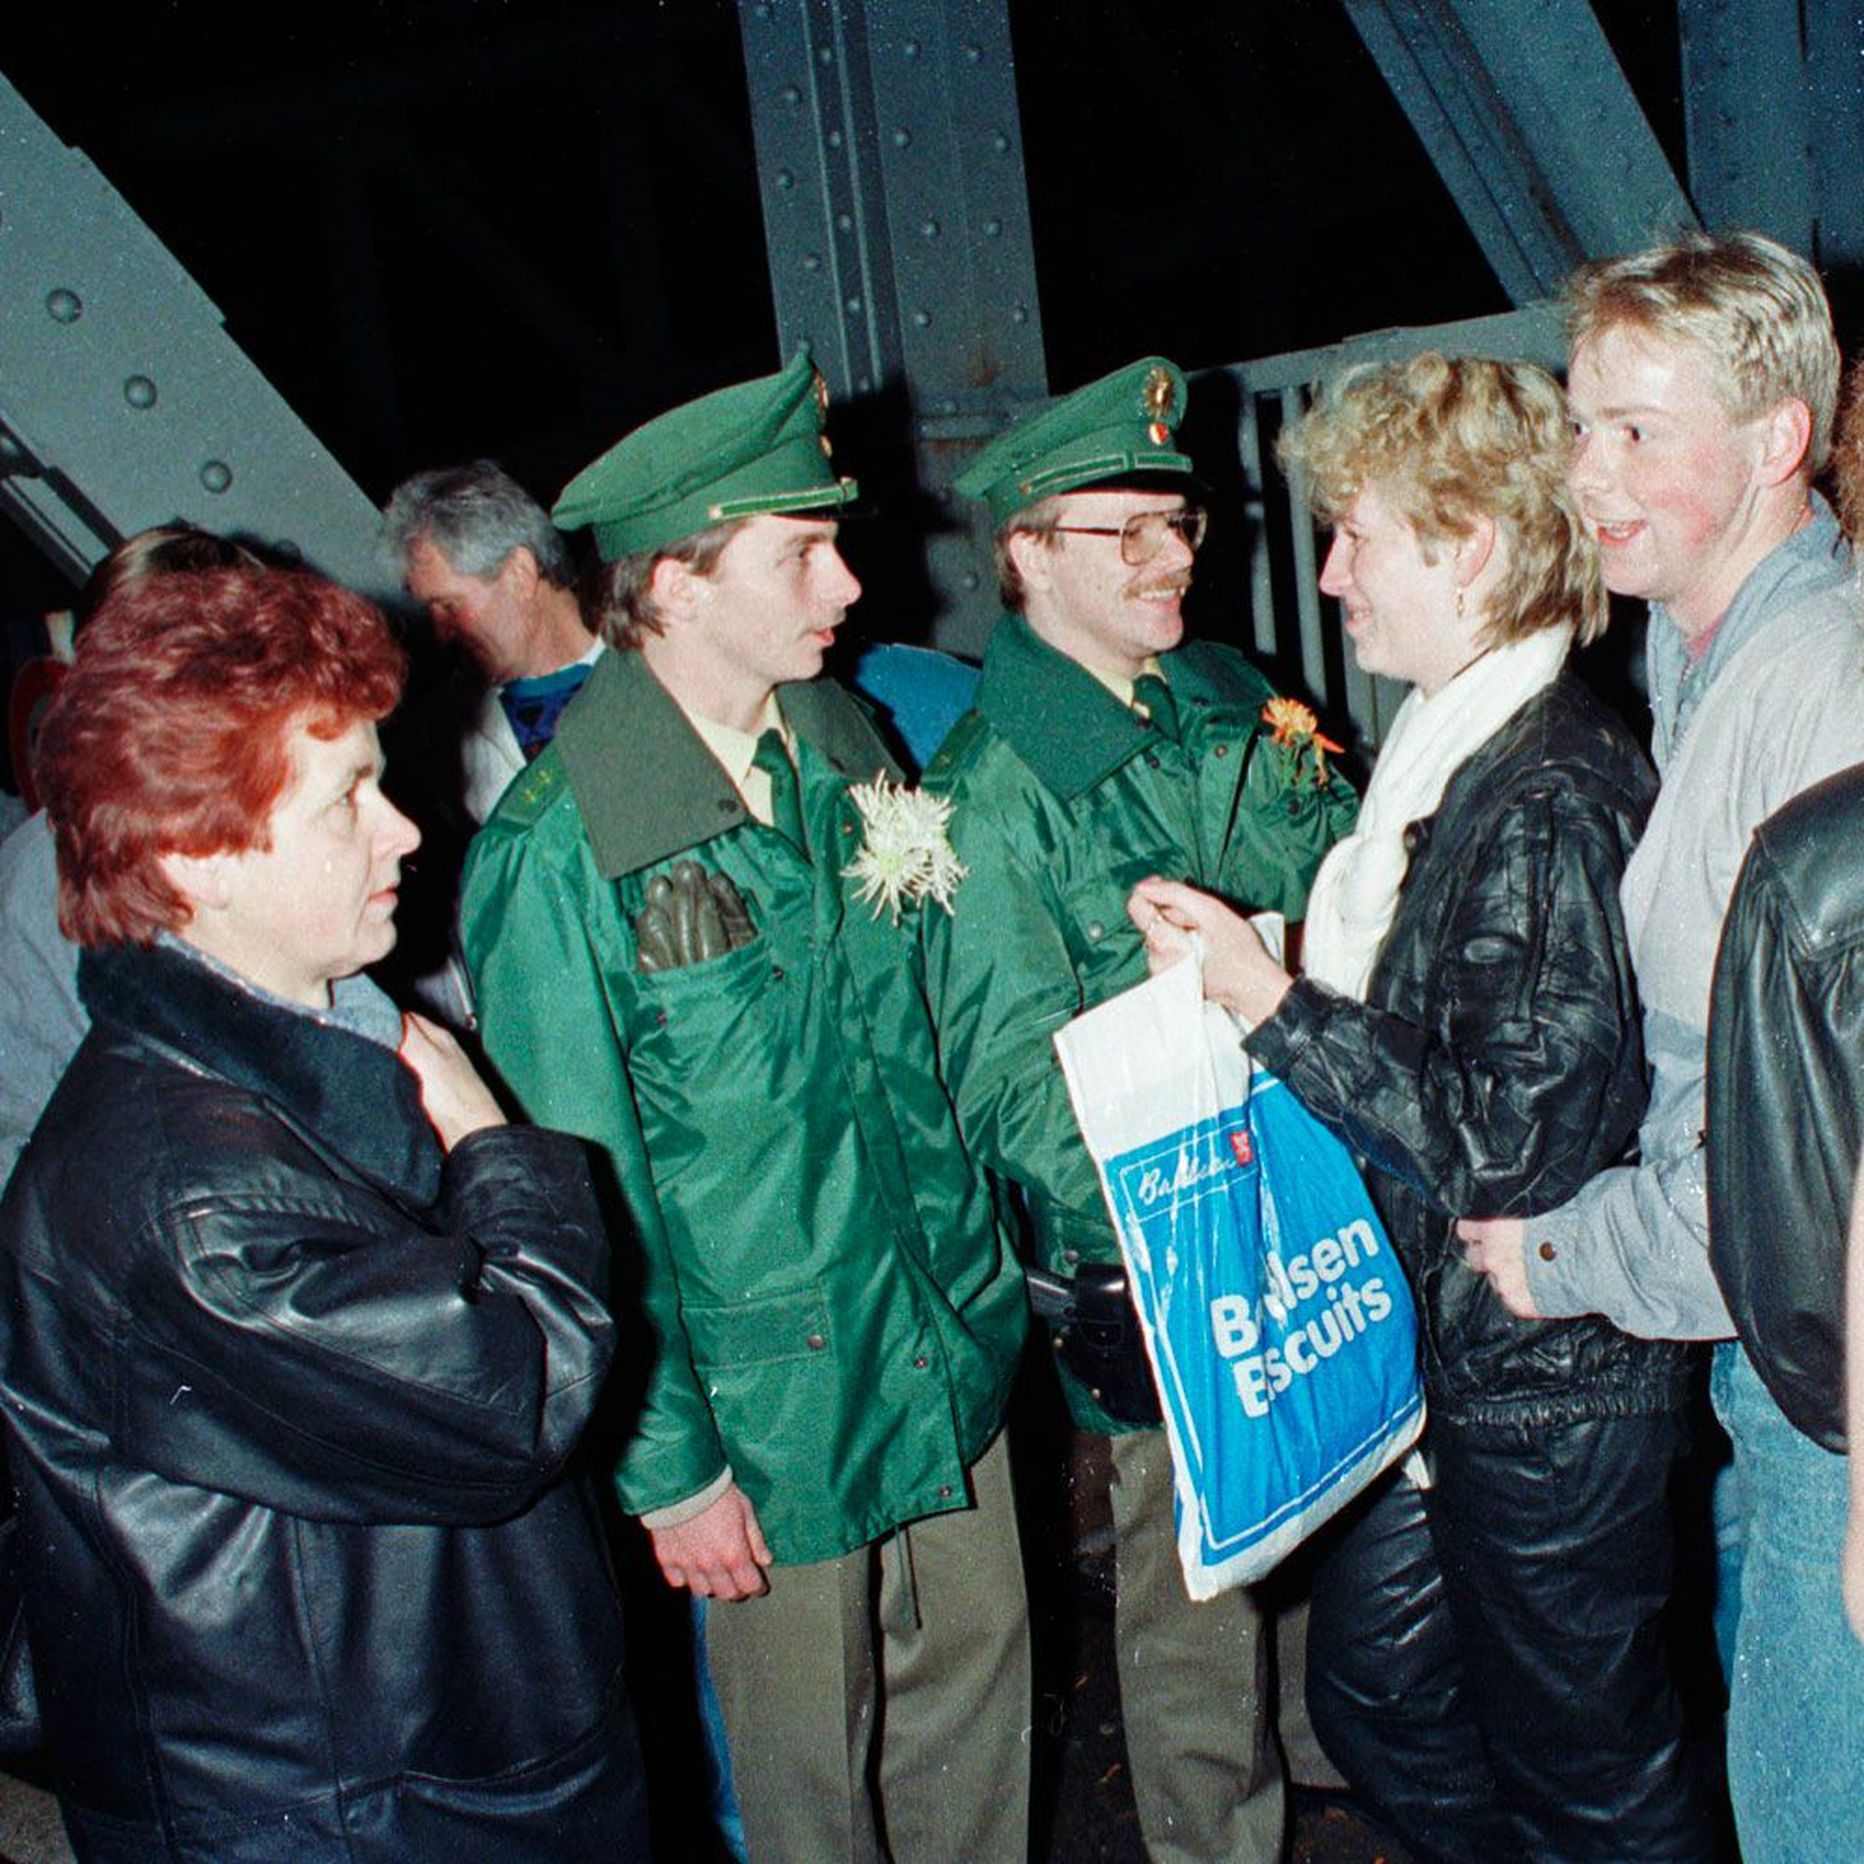 Rõõmus kohtumine 1989. aastal. Lääne-Saksa piirivalve tervitab idasakslasi.